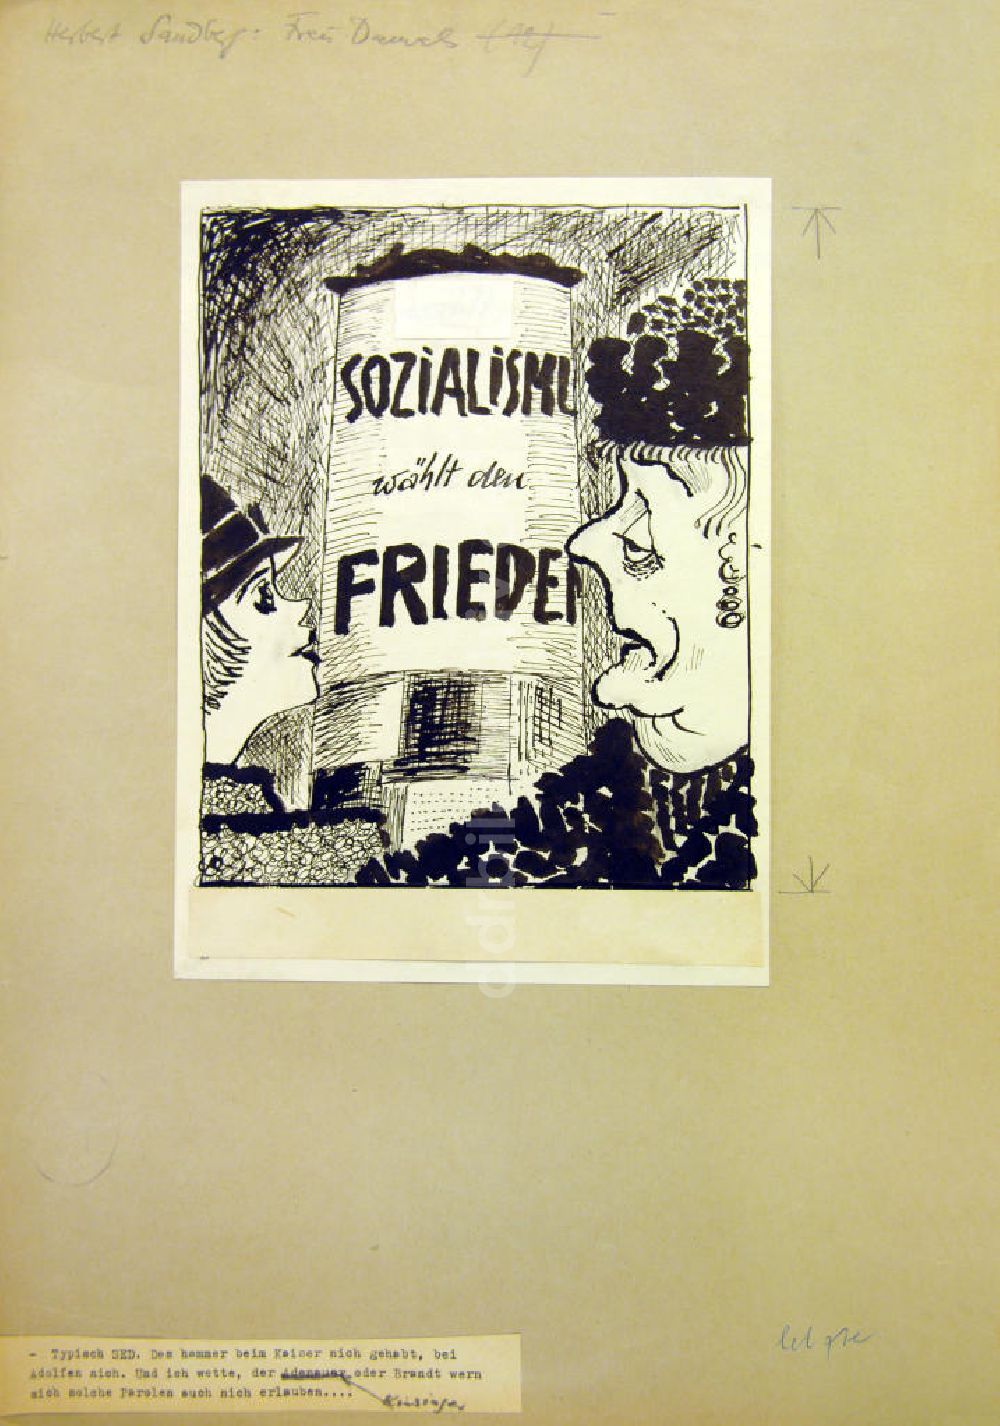 DDR-Fotoarchiv: Berlin - Zeichnung von Herbert Sandberg Frau Damals (Sozialismus, wählt den Frieden)